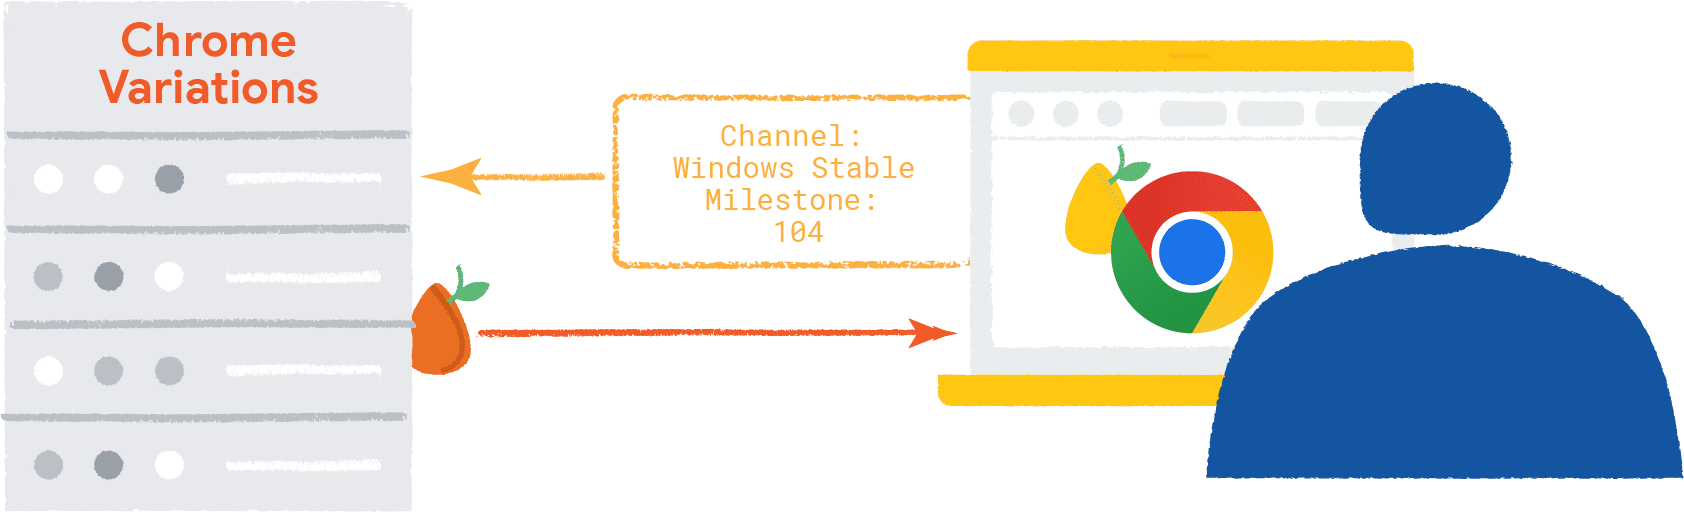 מידע על הדפדפן ומערכת ההפעלה שעוברים לקצה העורפי של הווריאציות של Chrome; המקור של וריאציות של Chrome עובר לדפדפן, שיש בו מקור רנדומלי.